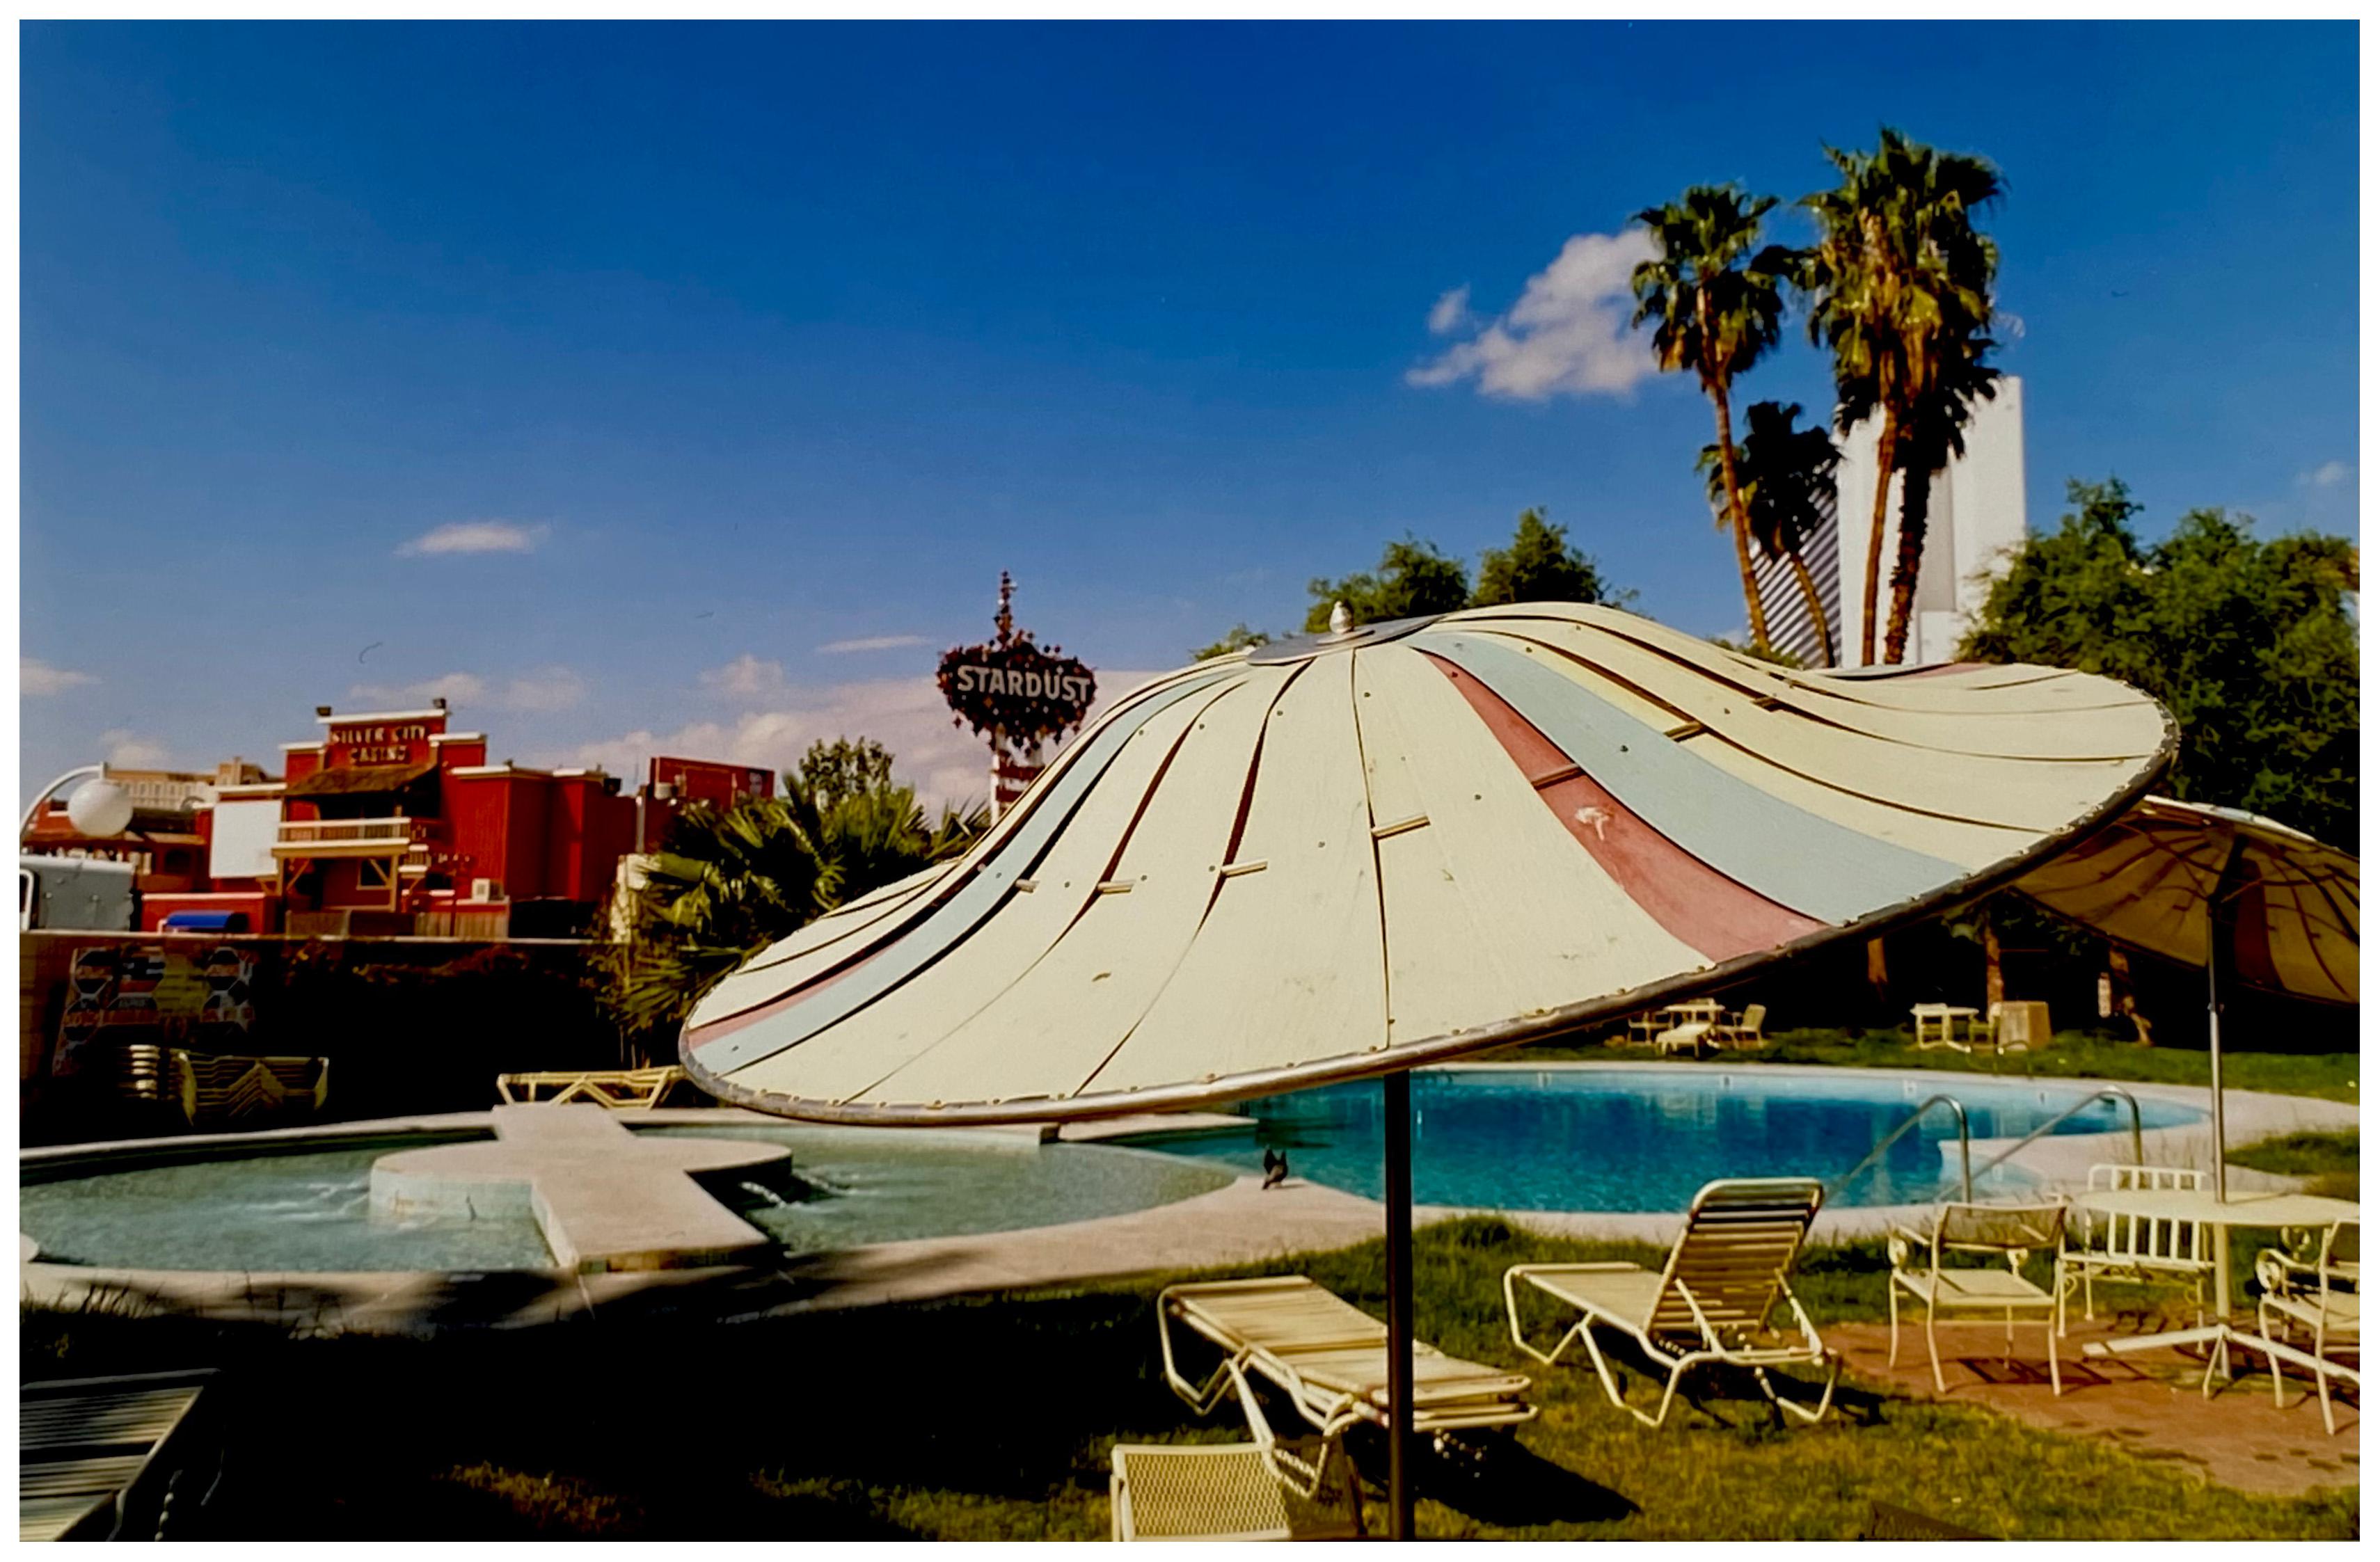 Print Richard Heeps - Parasol de plage, motel El Morocco, Las Vegas - Photographie couleur américaine